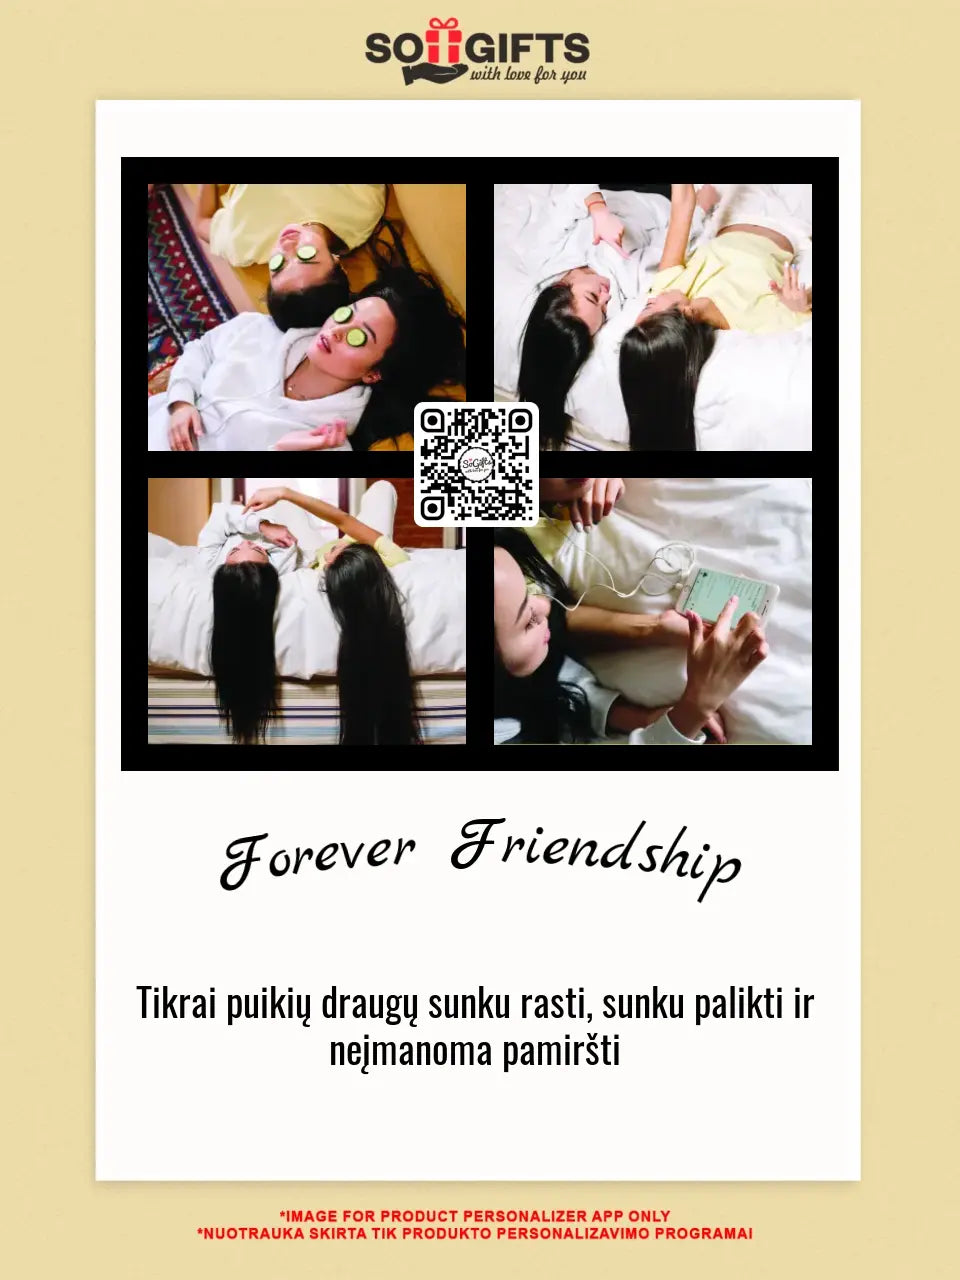 Personalizuotas "Forever Friendship" dizaino įrėmintas plakatas su jūsų nuotraukomis ir tekstu